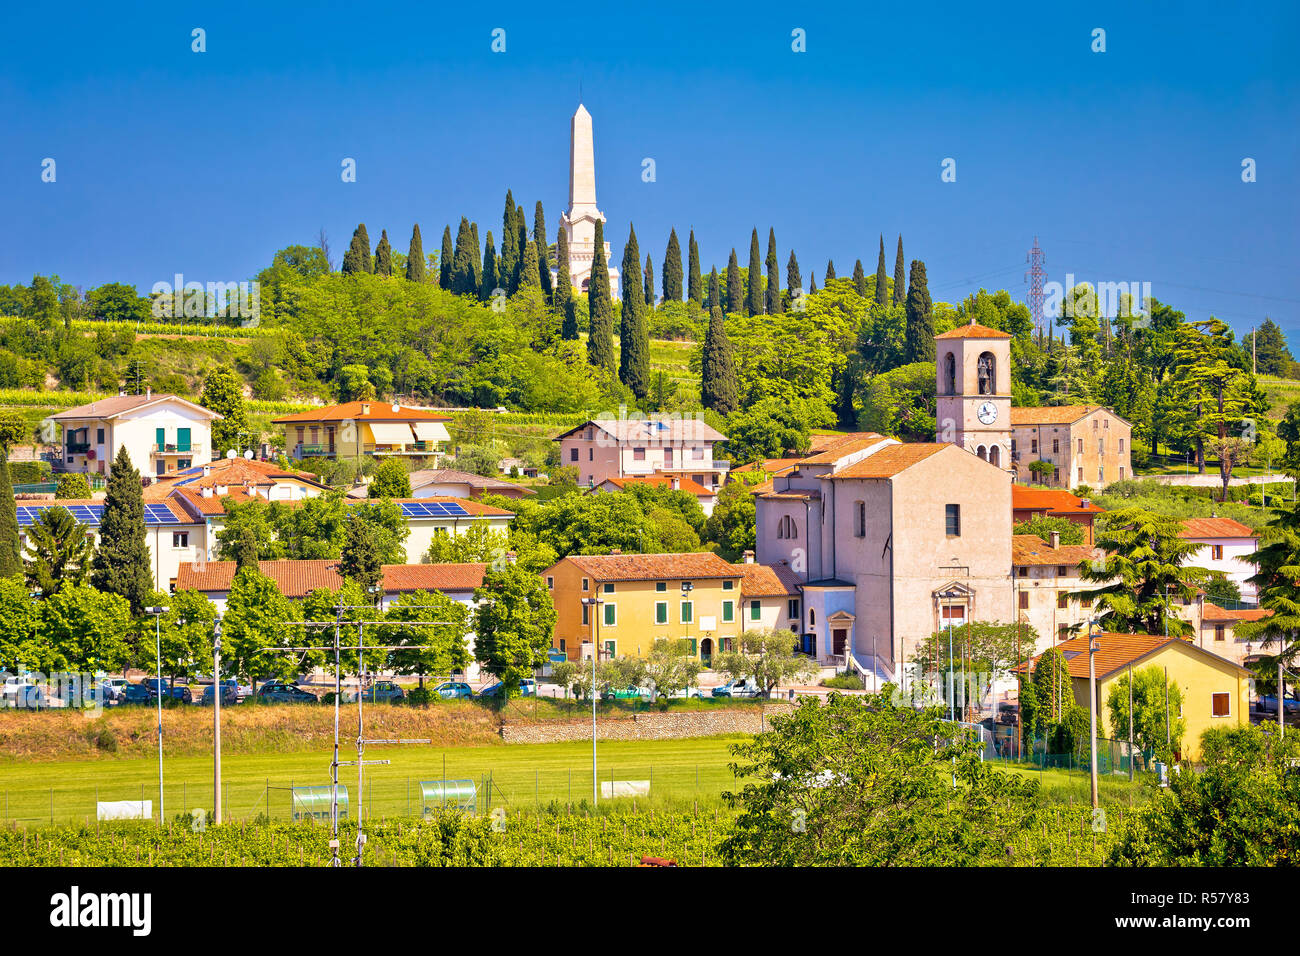 Village of Custoza idyllic landscape view Stock Photo